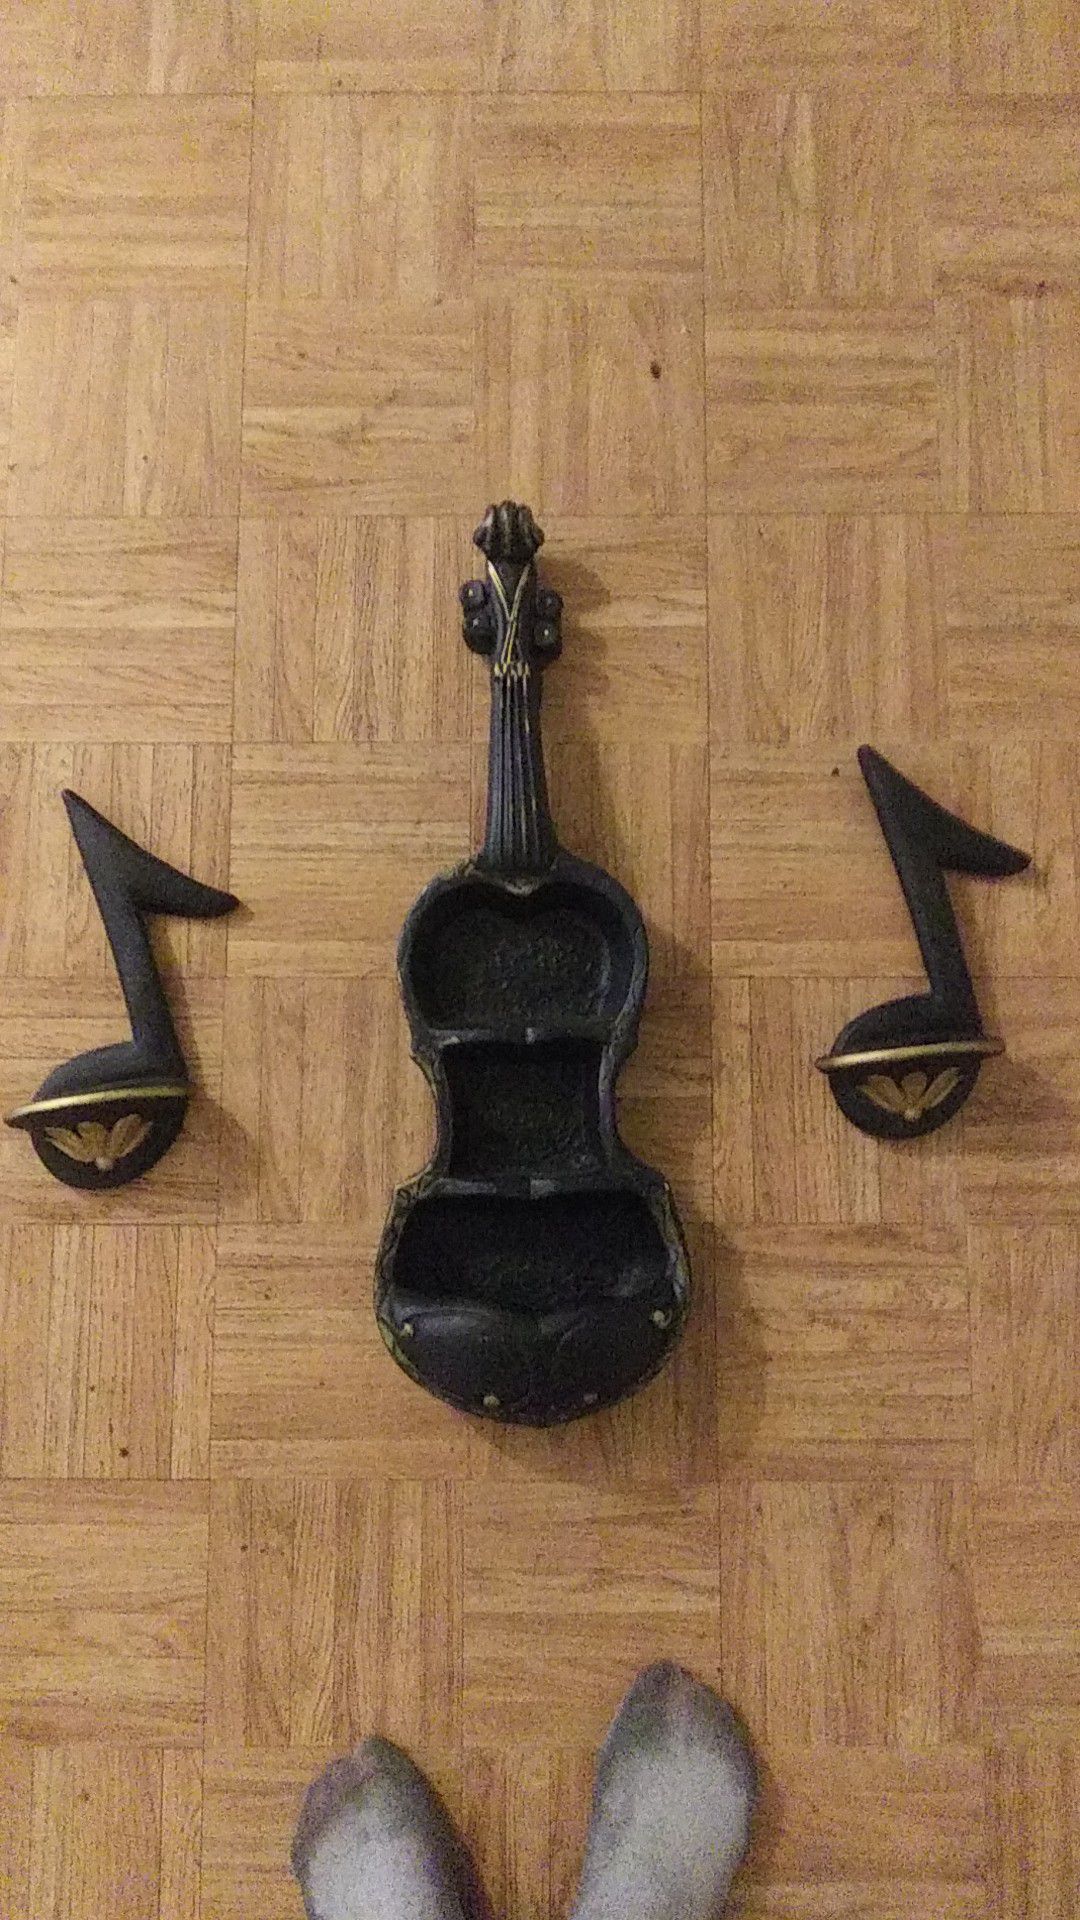 Music wall notes & violin